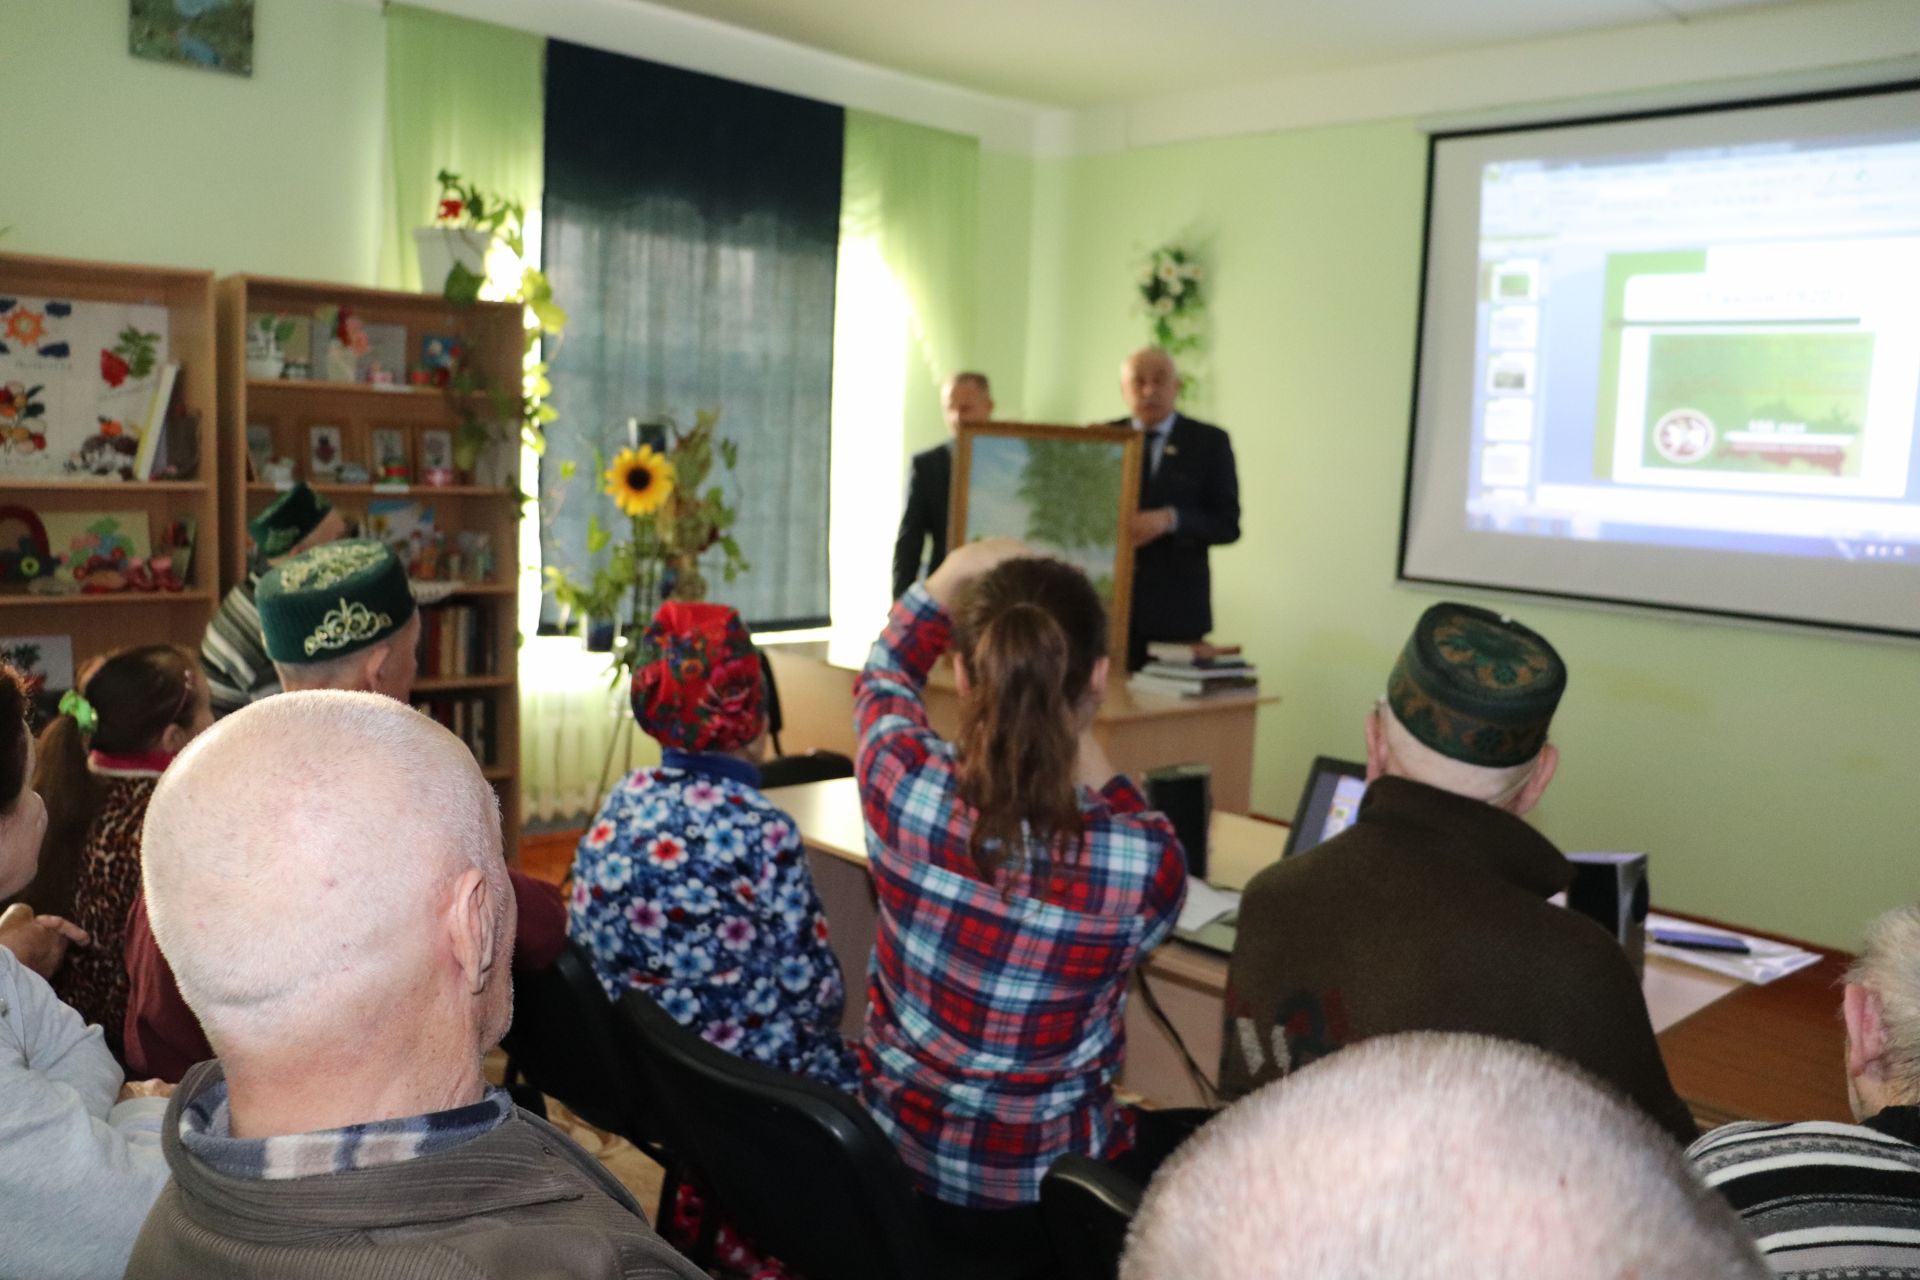 Алькеевский район: депутат Камиль Нугаев посетил Юхмачинский дом-интернат для пожилых и инвалидов